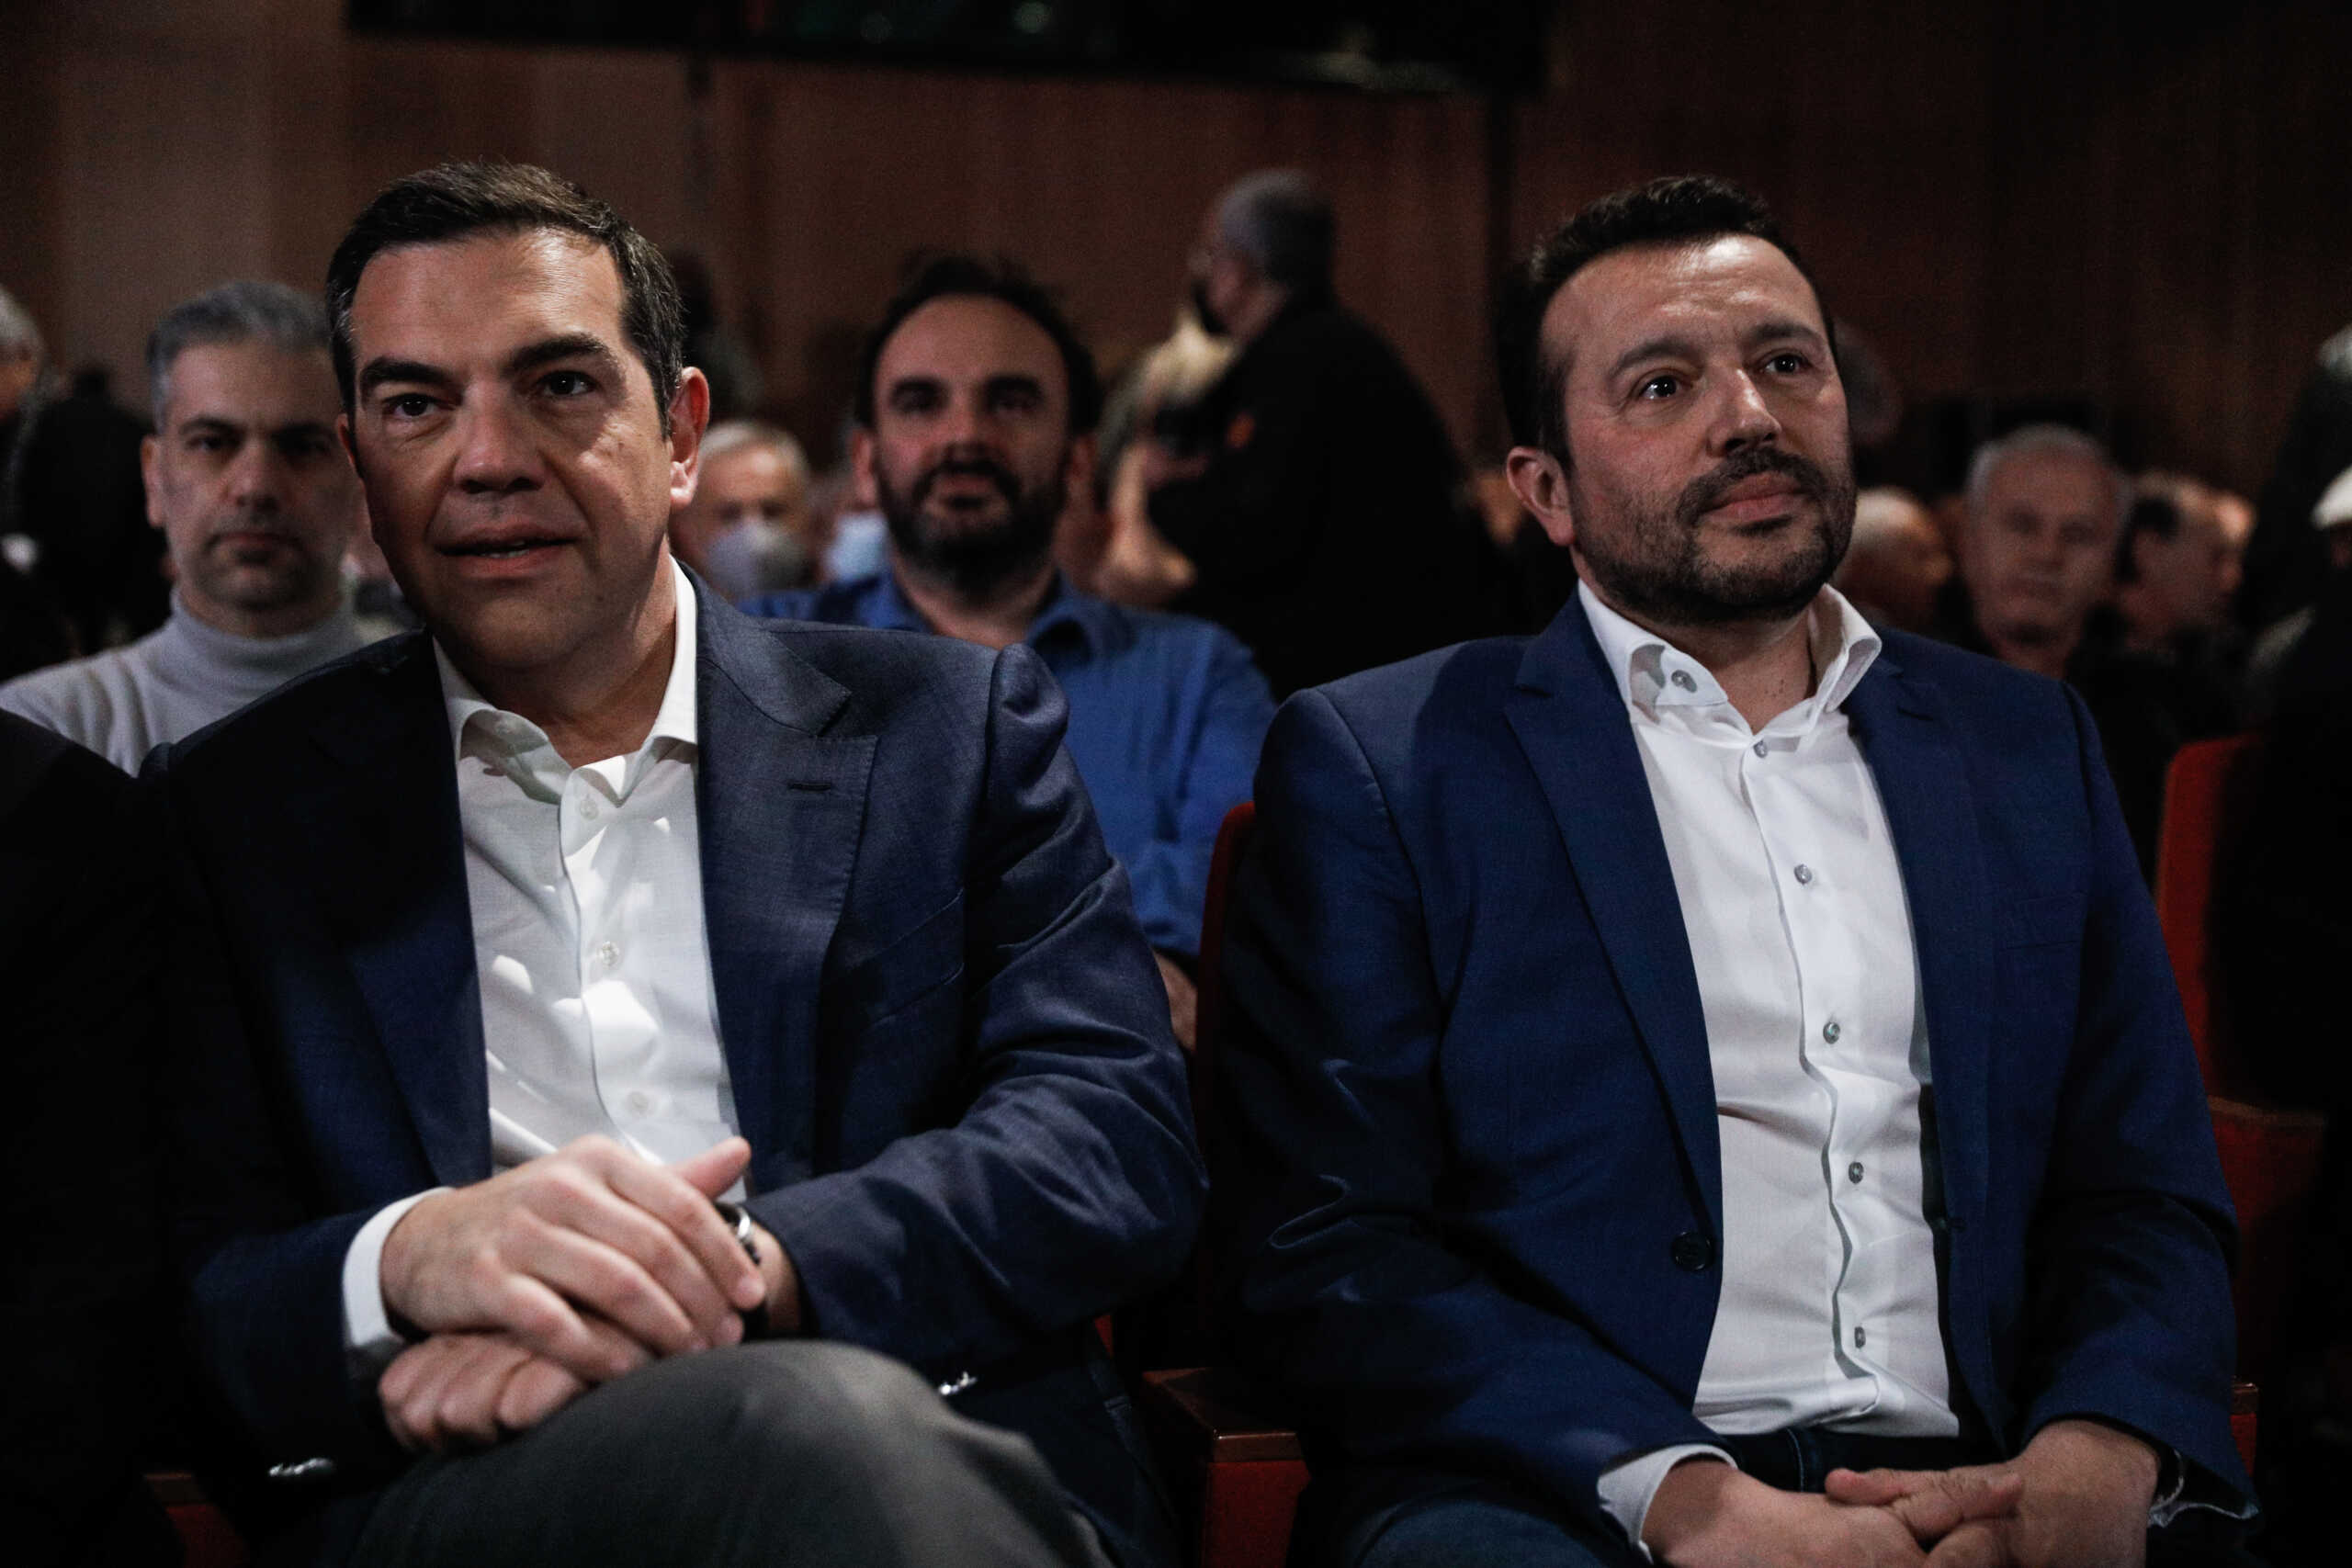 ΣΥΡΙΖΑ: Δεν στηρίζουν την πρόταση Κασσελάκη για δημοψήφισμα Παππάς, Γεροβασίλη, Θεοχαρόπουλος, Ξενογιαννακοπούλου